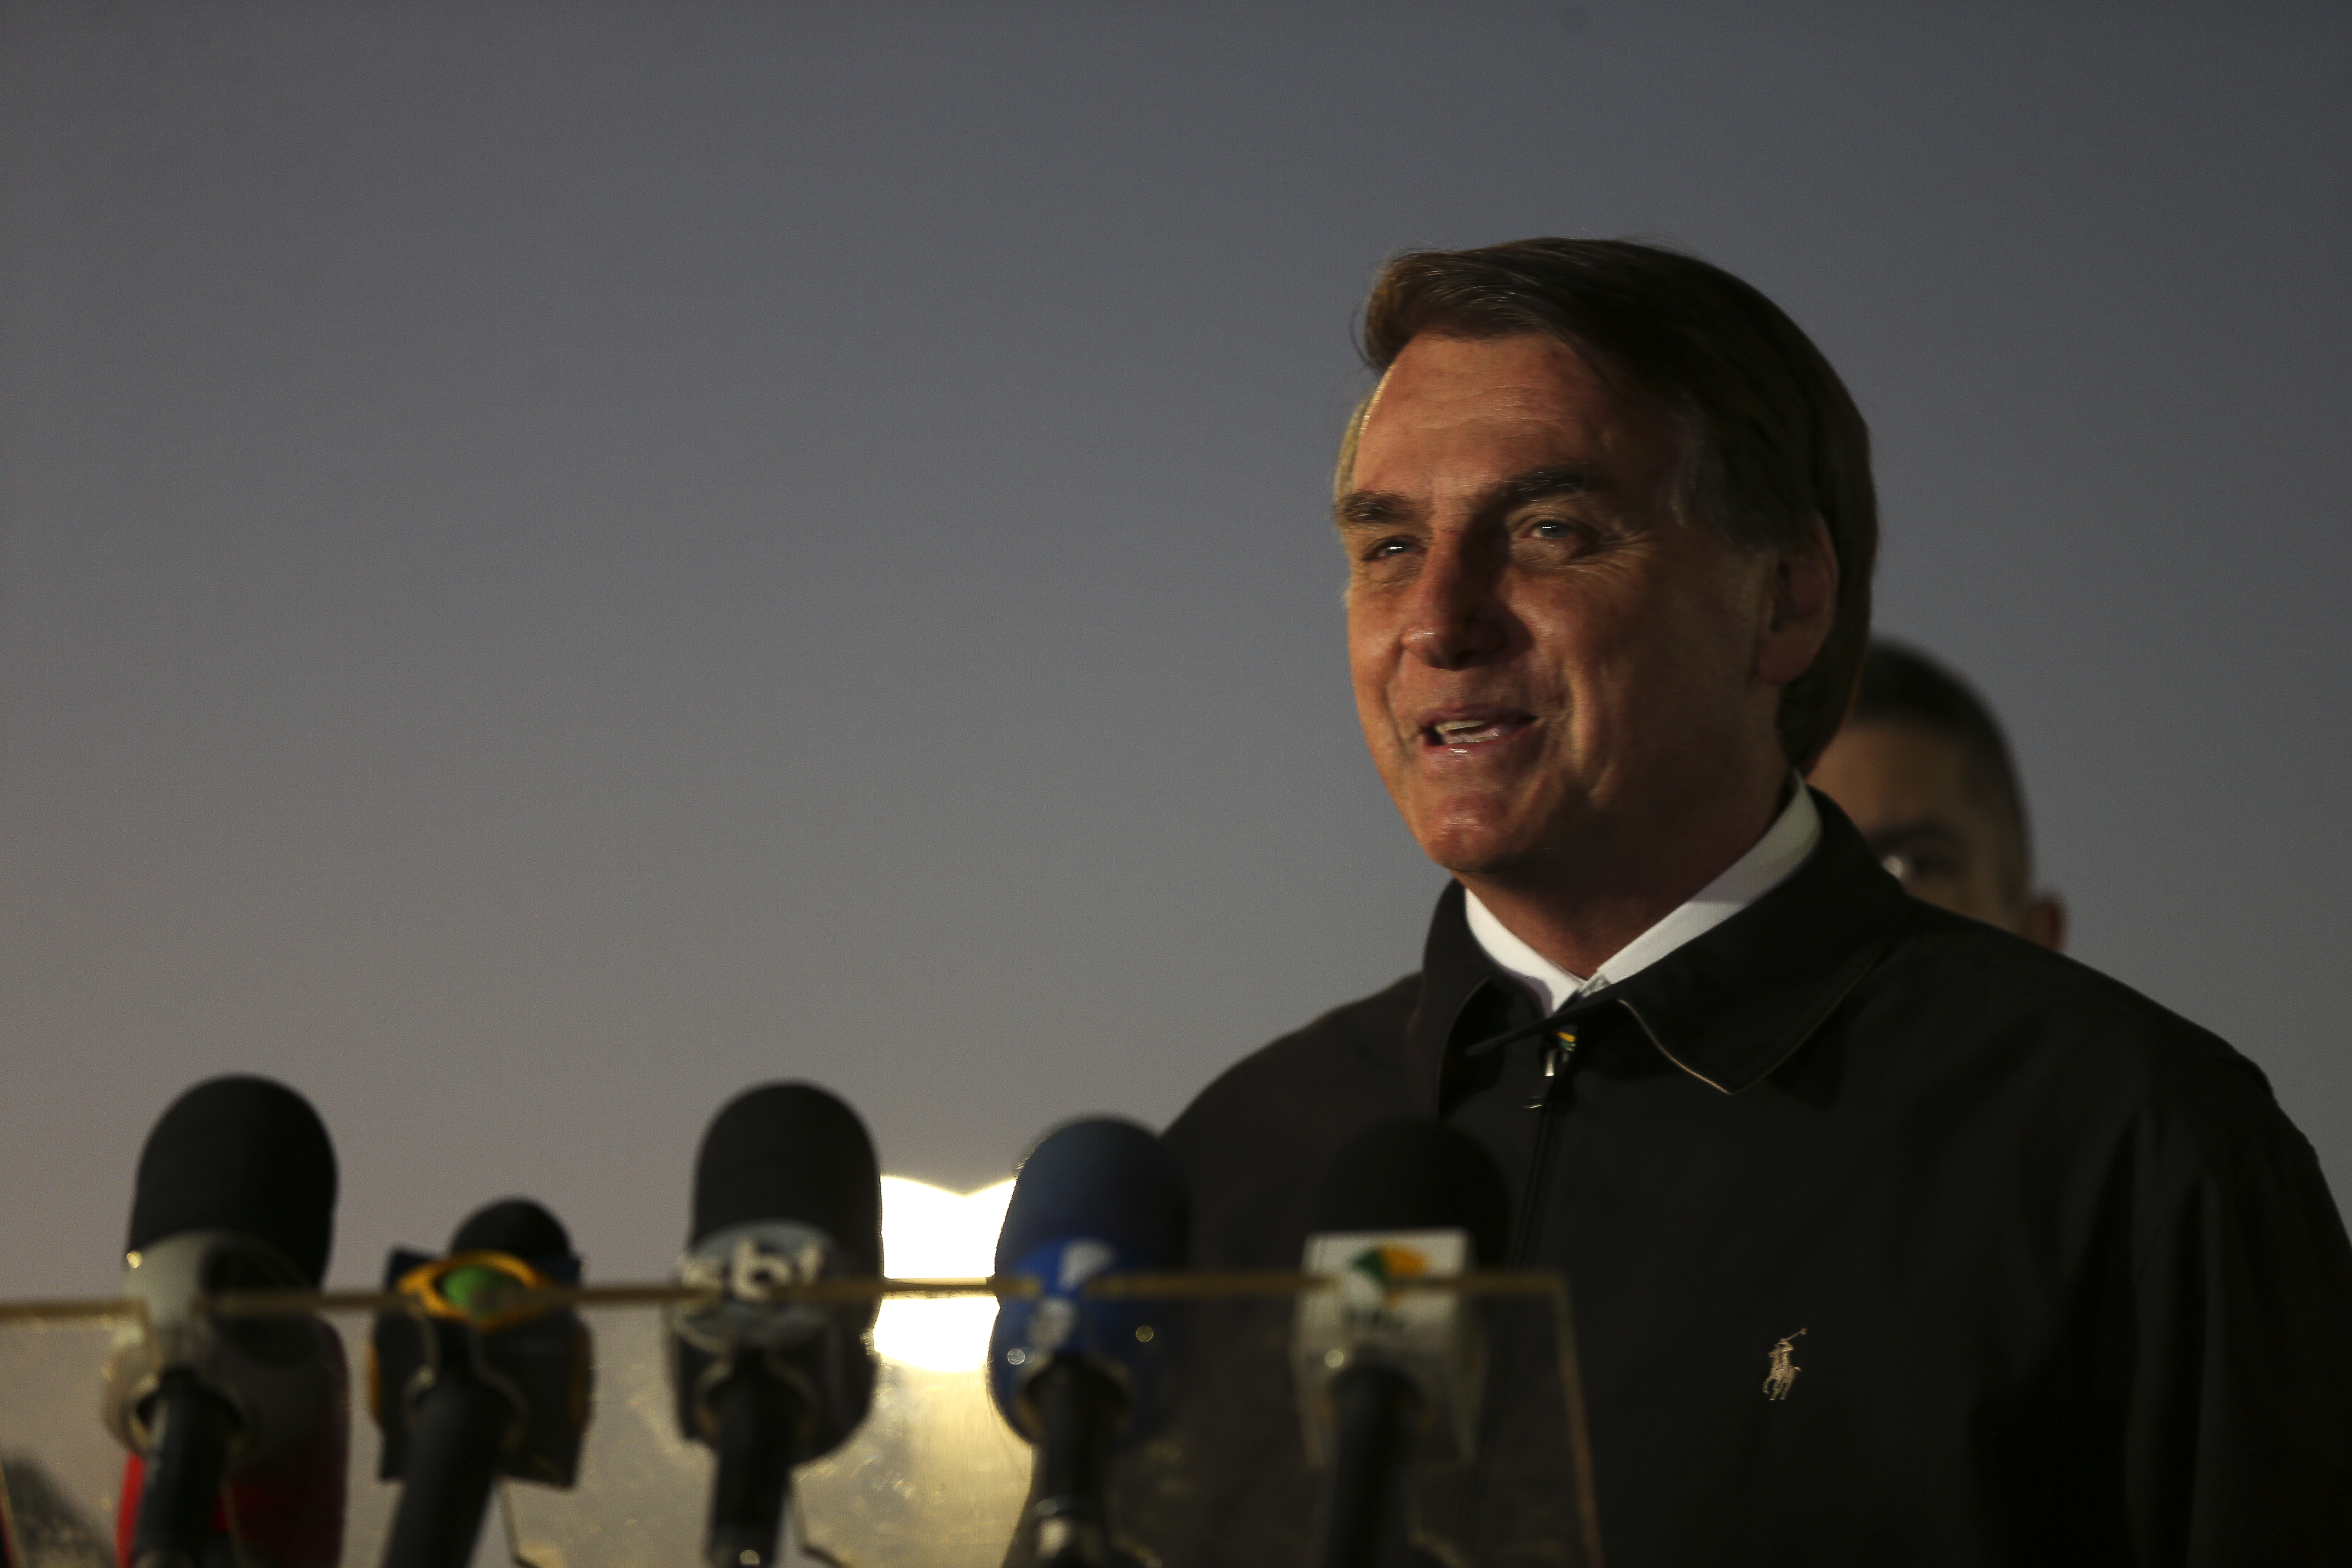 Bolsonaro cumprimenta populares no Palácio da Alvorada